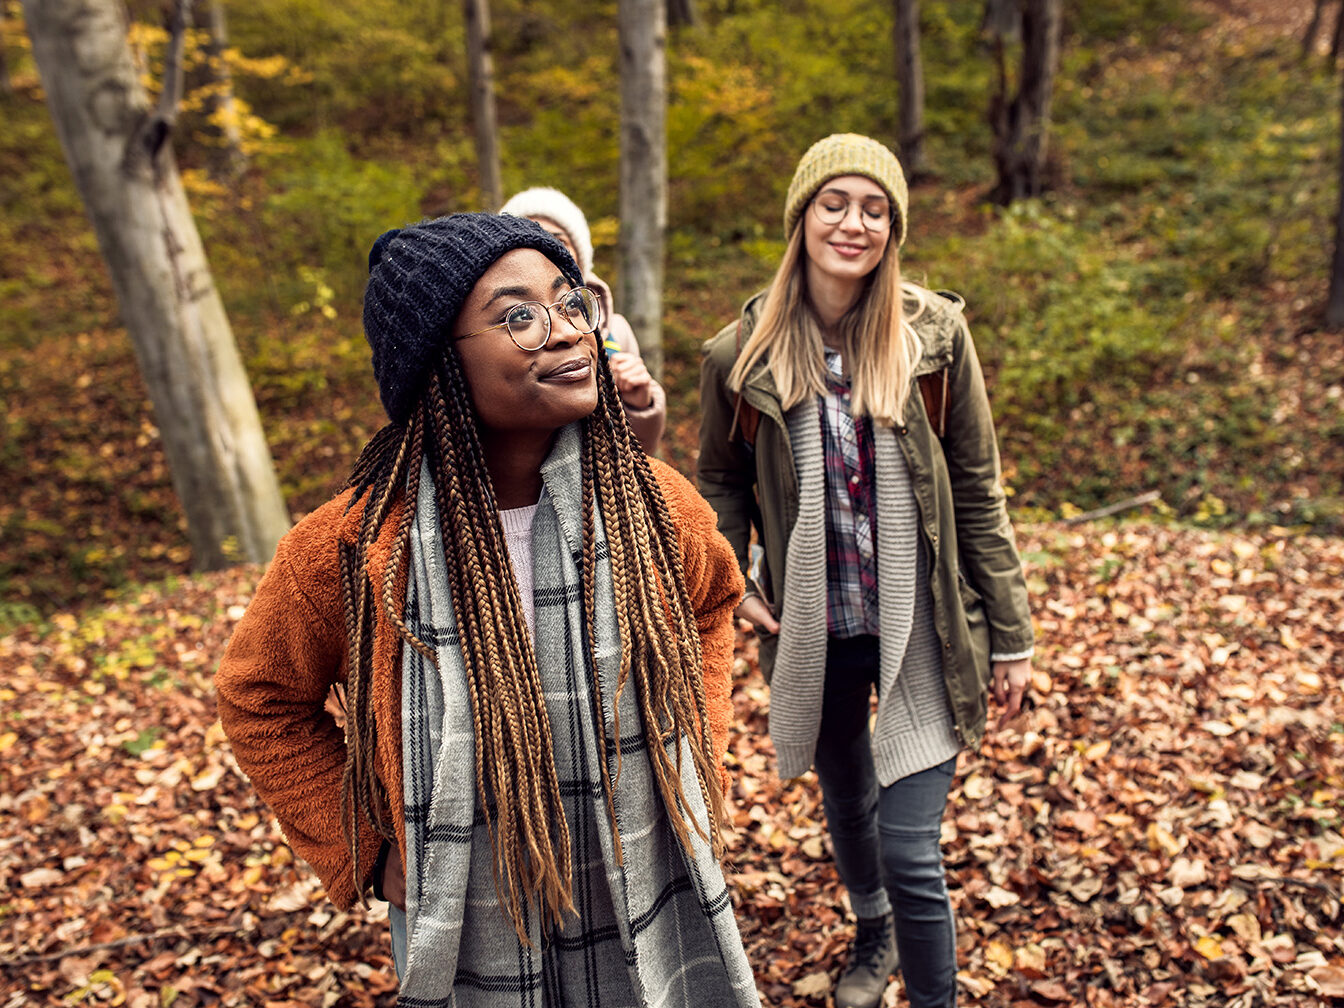 Three diverse women enjoying hiking outdoors